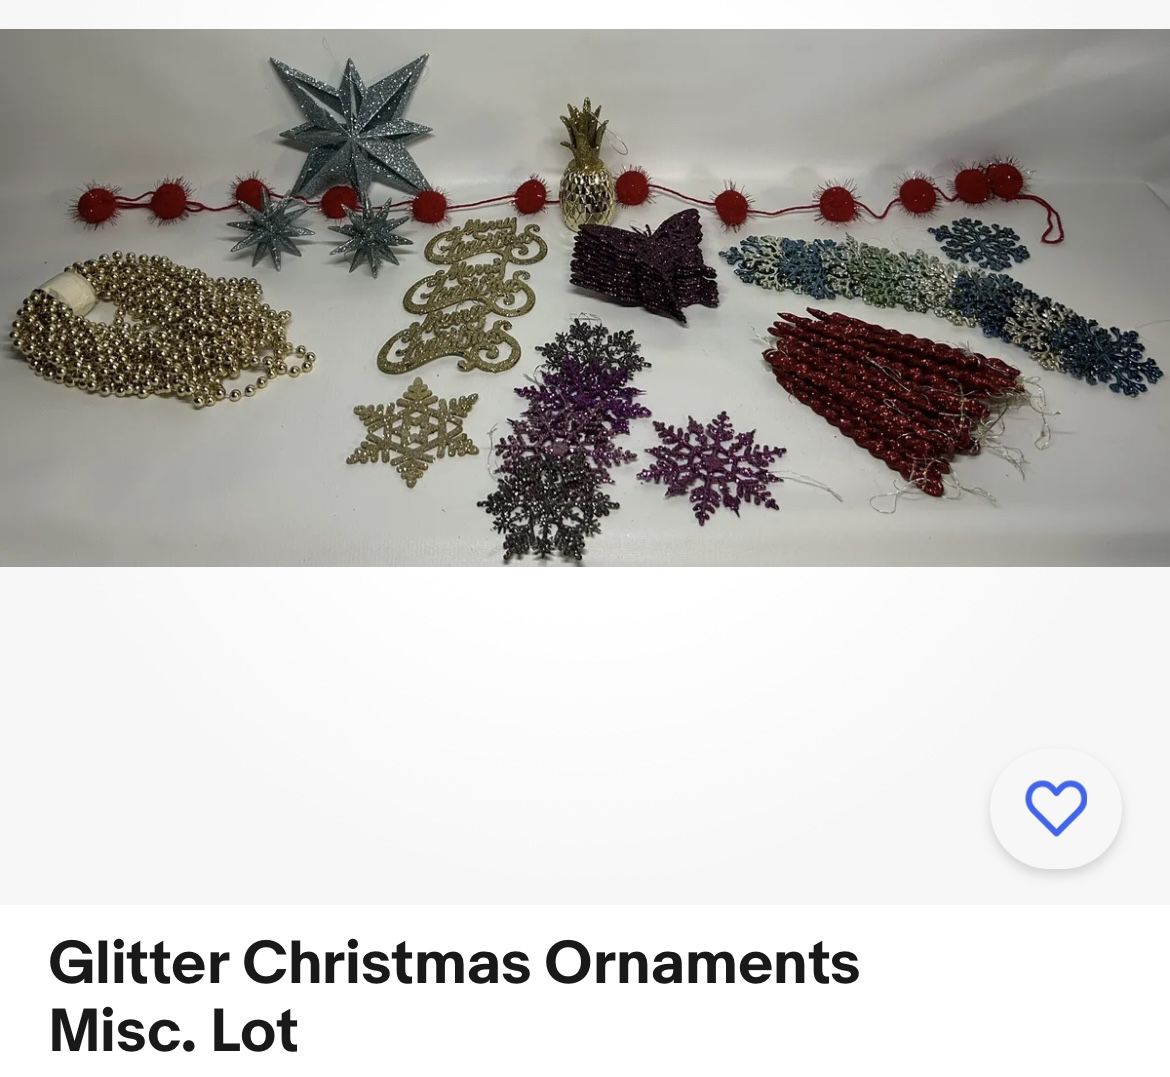 Glitter Ornaments Lot 